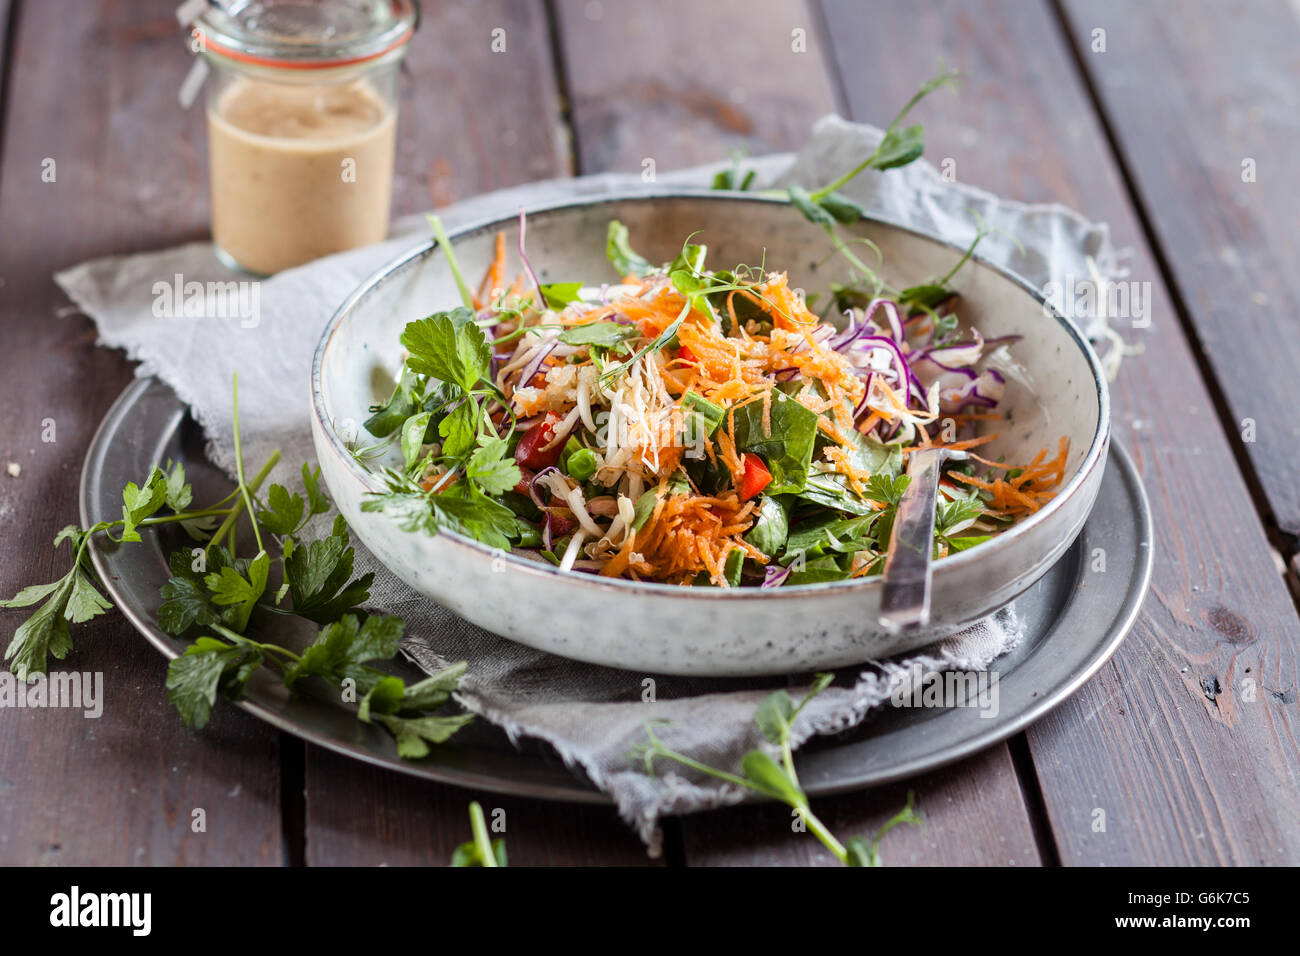 Regenbogen-Salat mit Blattspinat, Erbsen, Karotten, Mung Sojasprossen ...